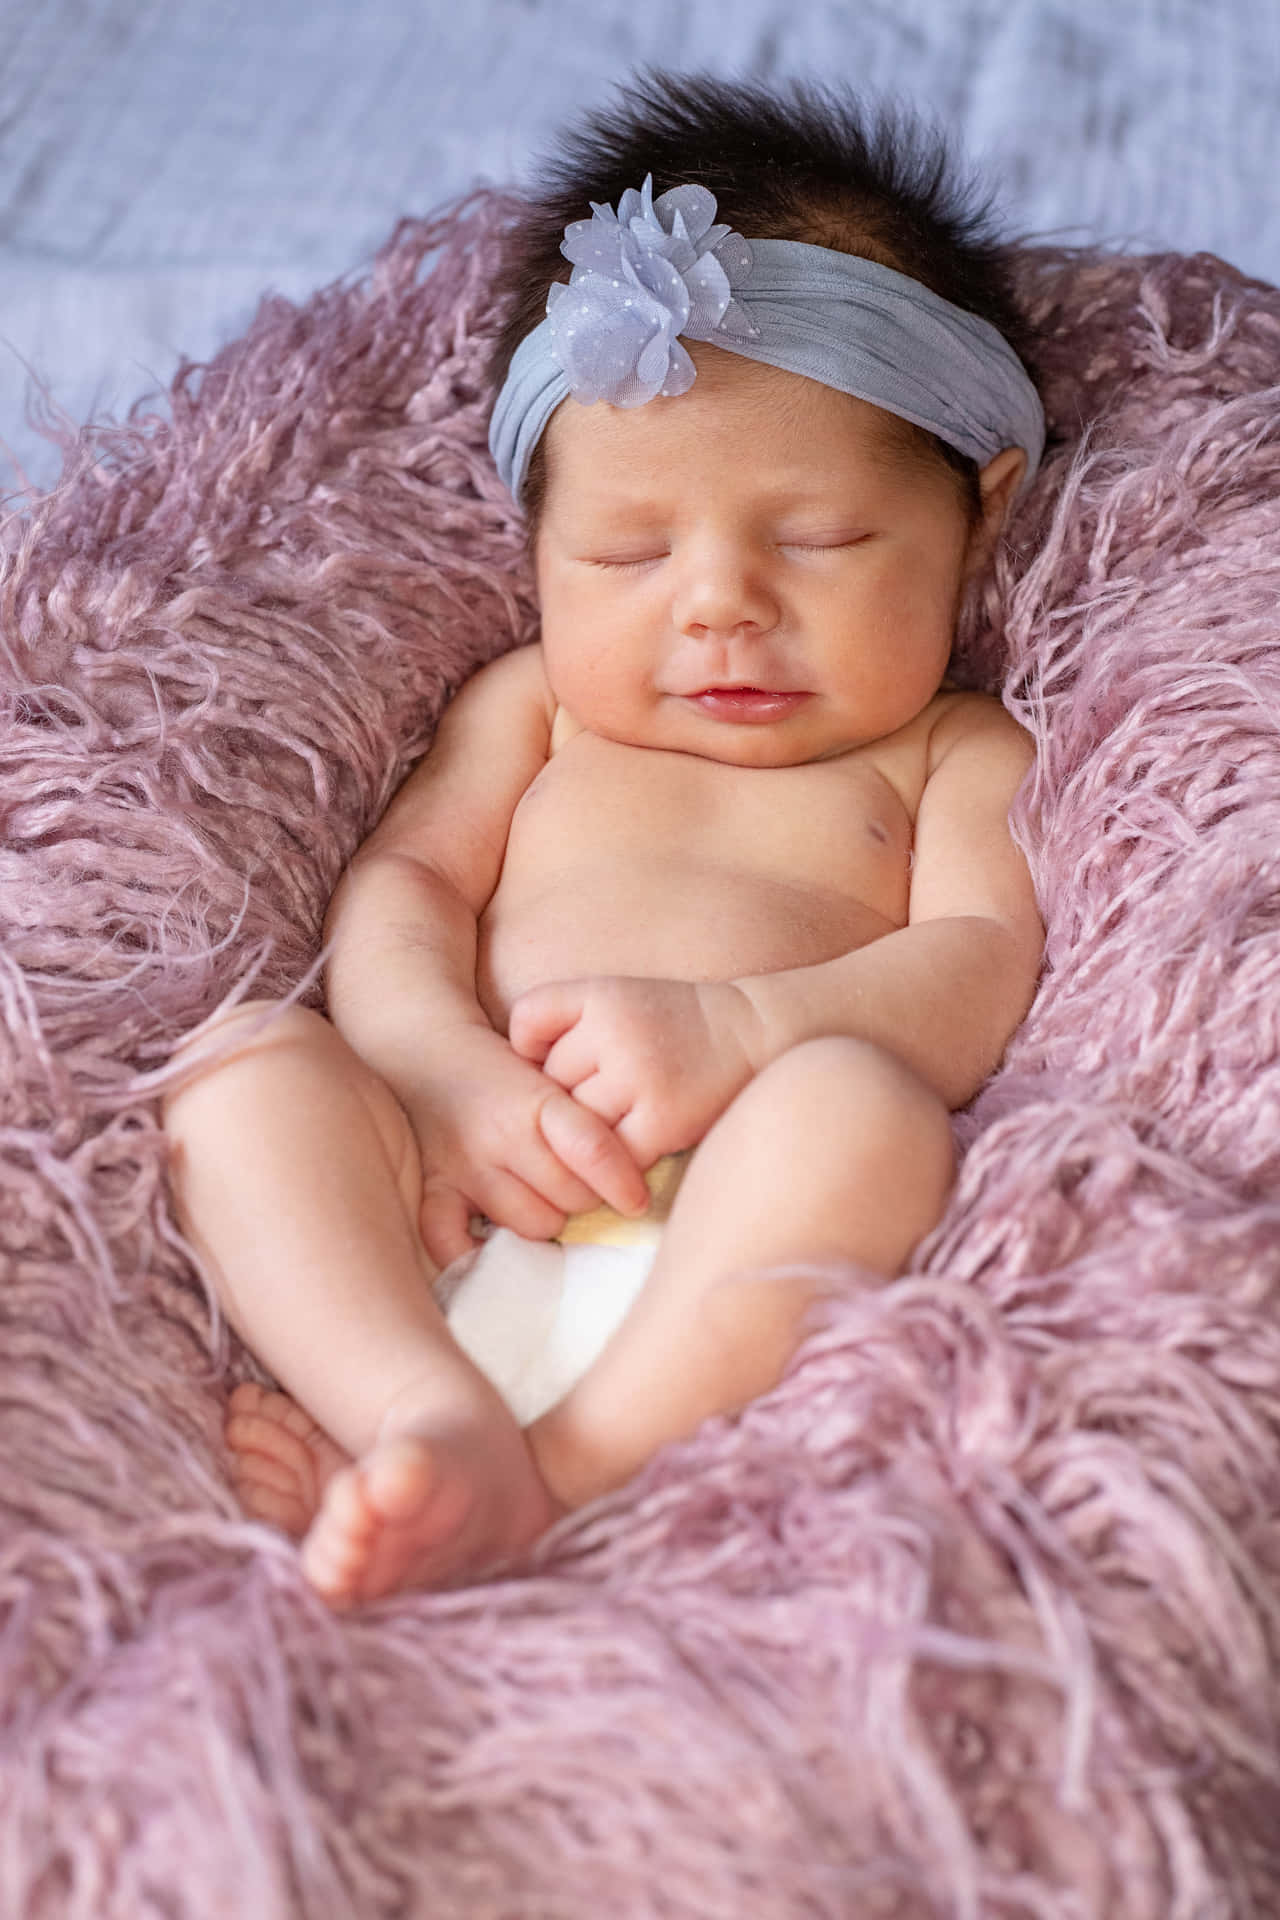 Neugeborenesbaby Bild Mit Einer Auflösung Von 4160 X 6240